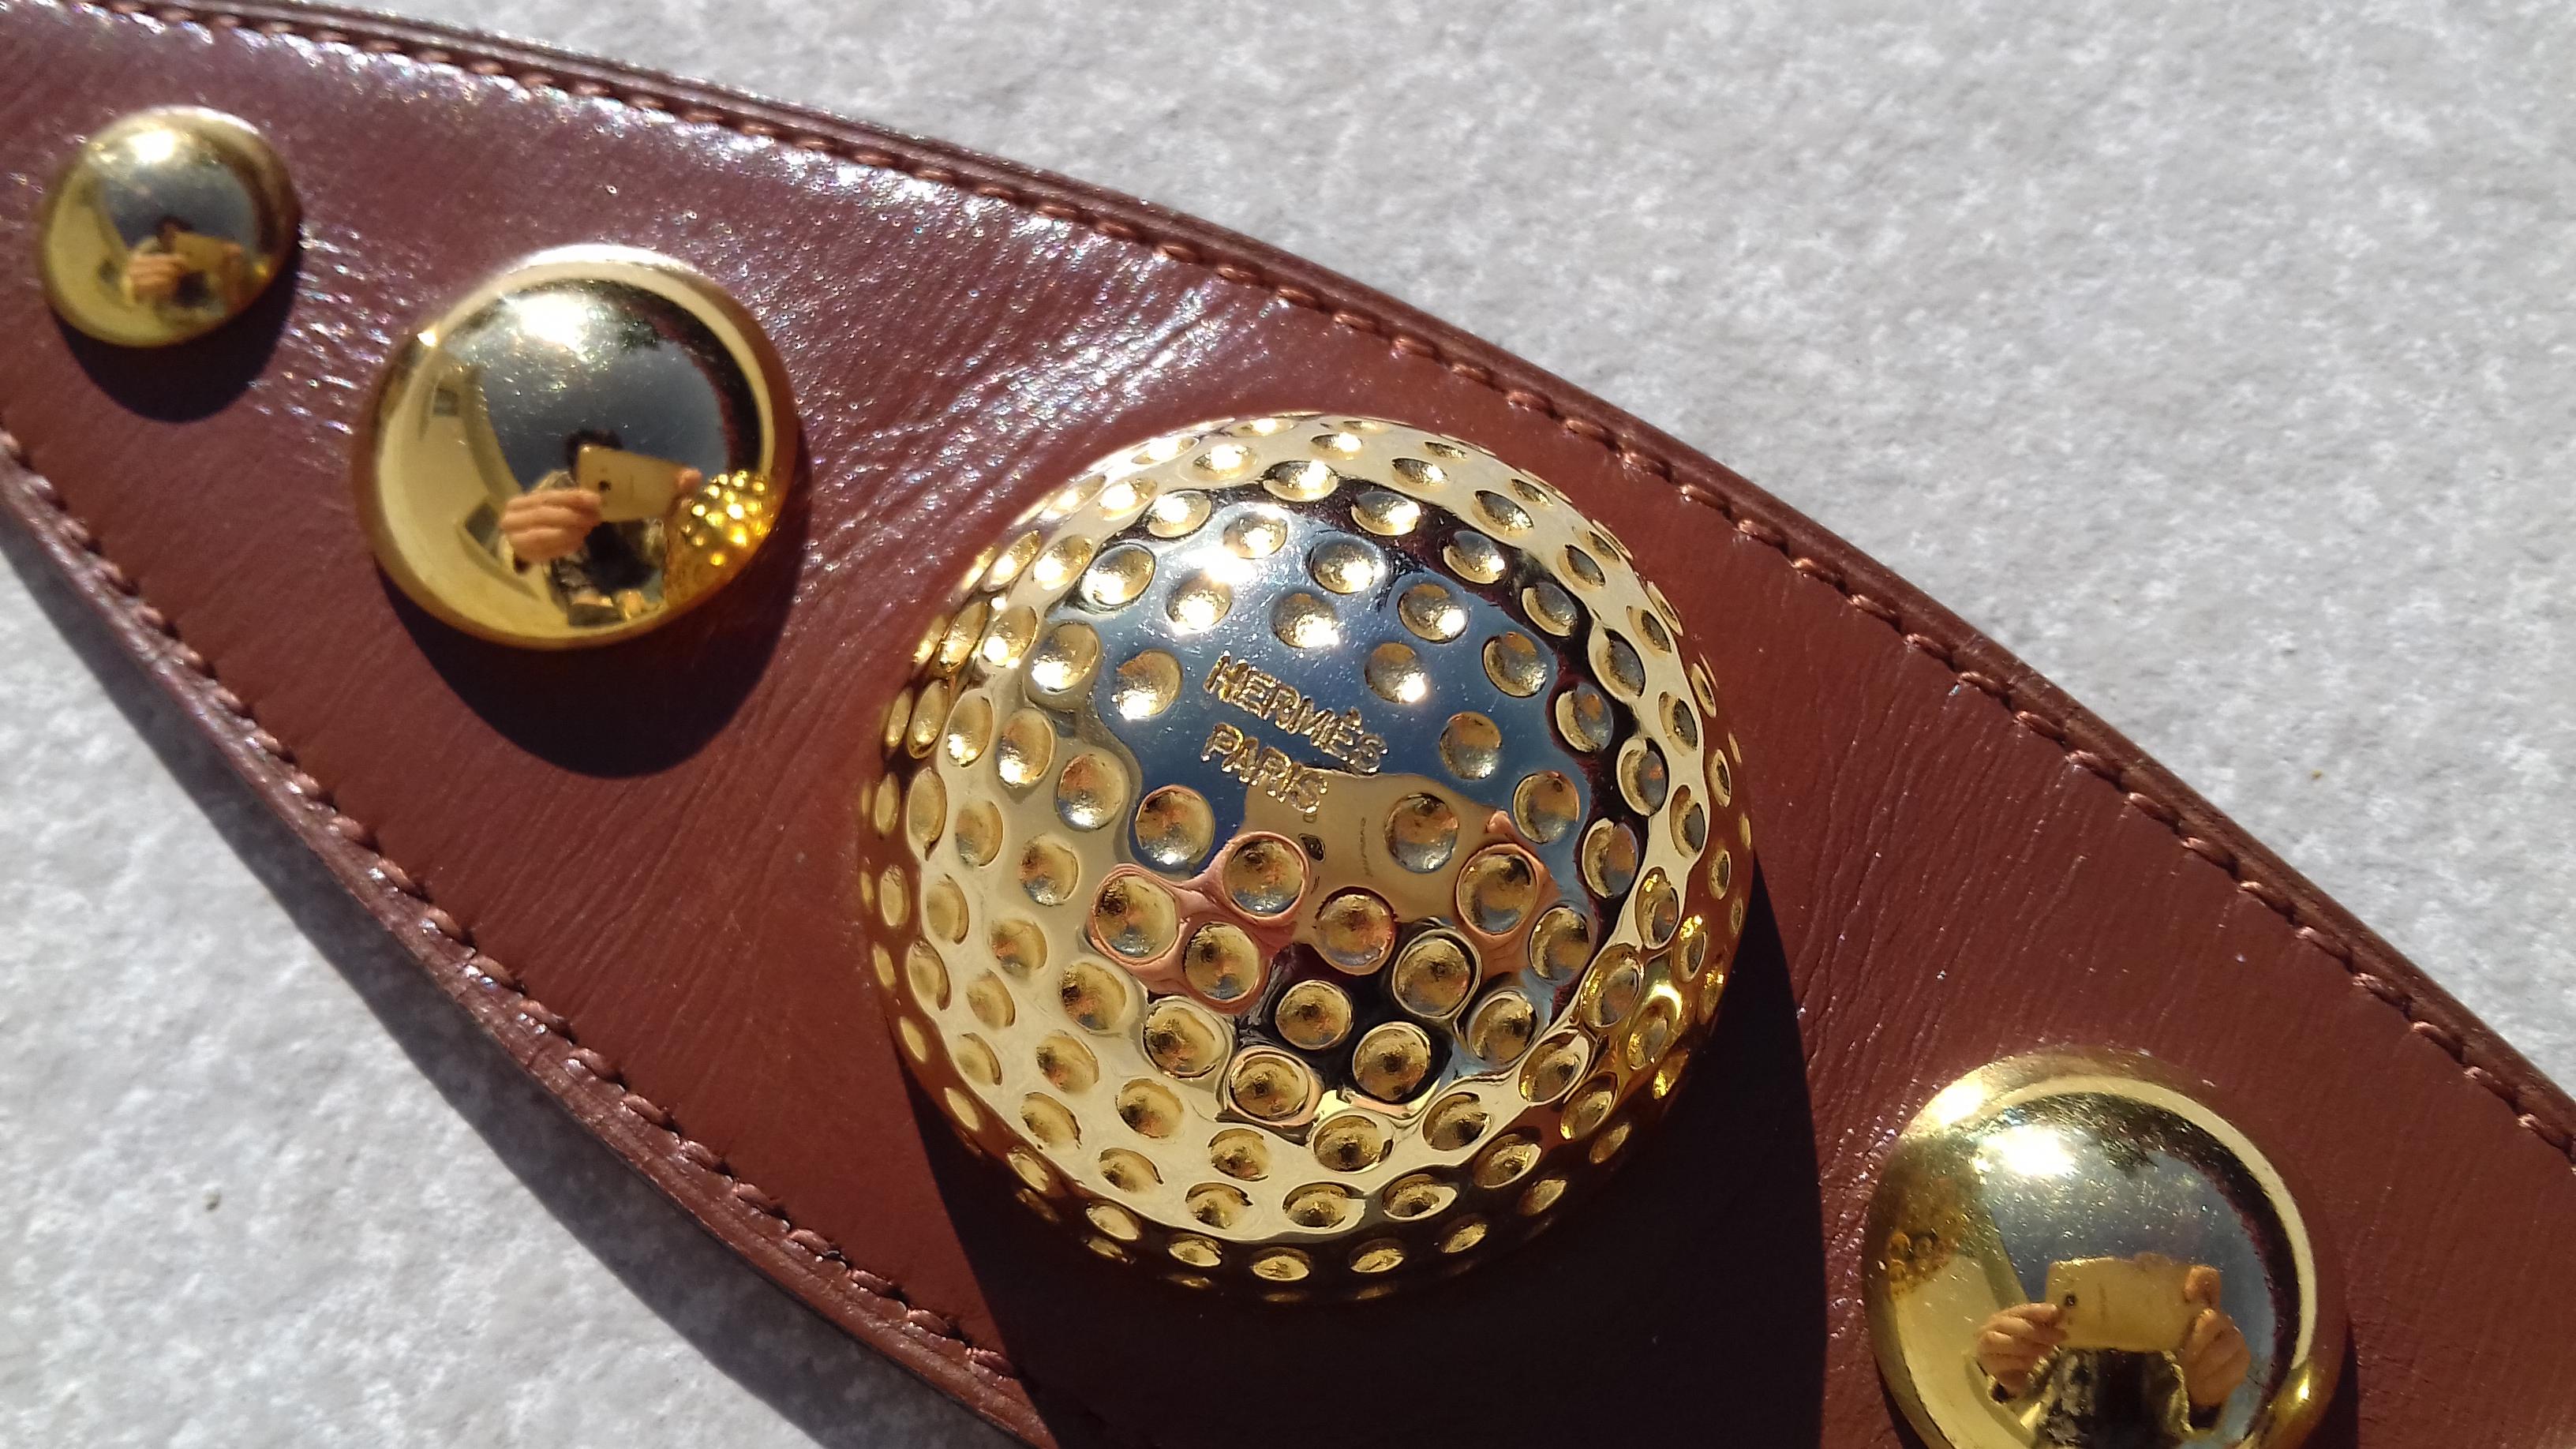 Seltene authentische Hermès Vintage Ornament

Besteht aus einem Stück Leder, das mit halben Kugeln verziert ist. Der mittlere ist mit 